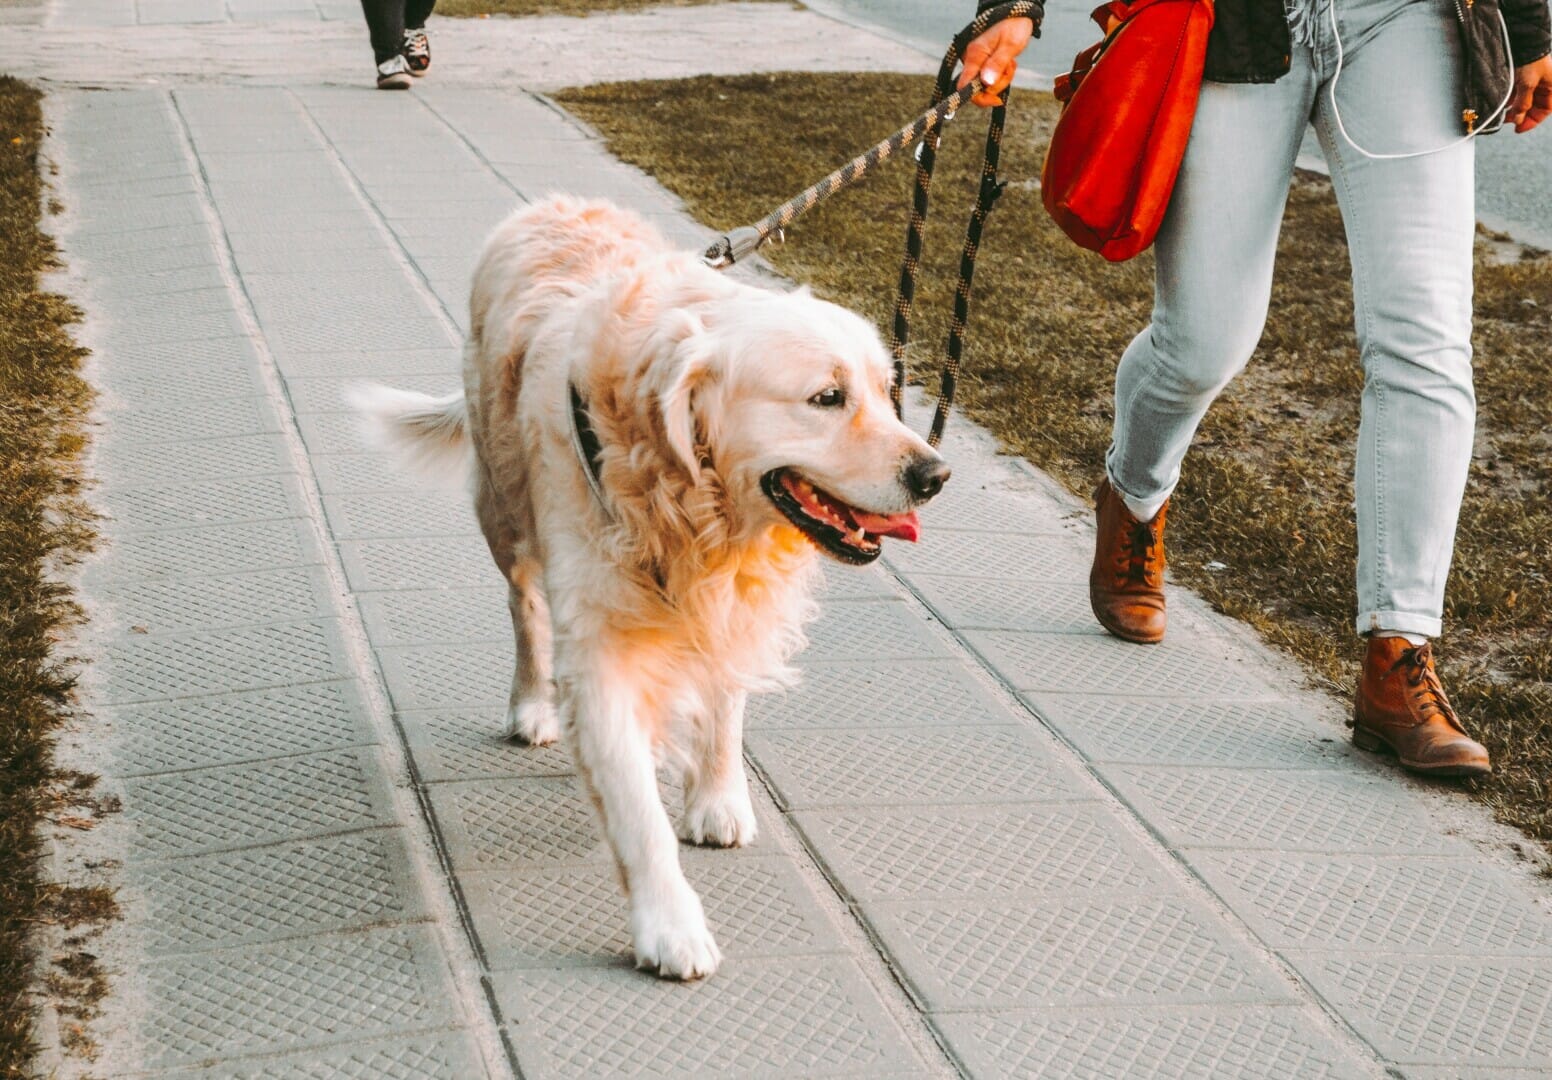 Golden retriever being walked on a sidewalk